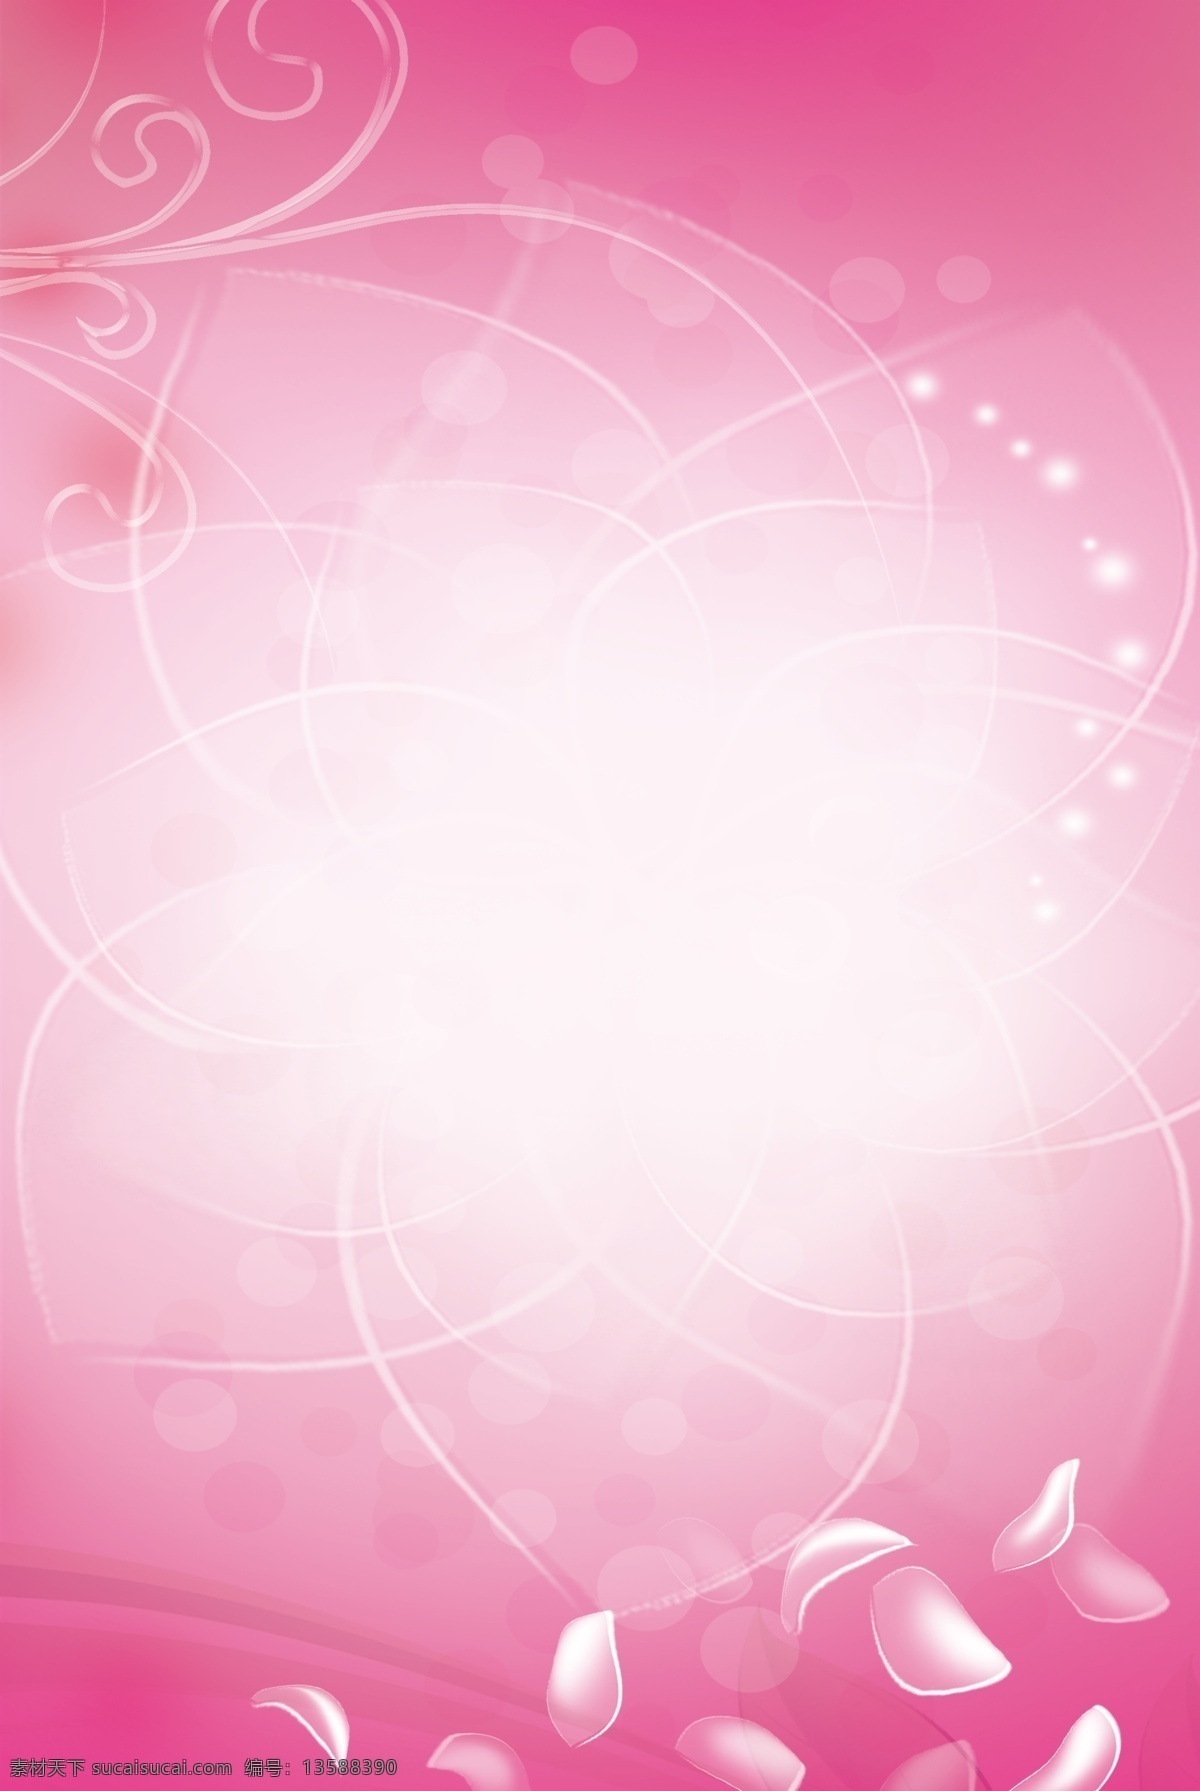 粉色清爽背景 粉色 花瓣 花朵 花纹 亮点 渐变 好看 清爽 雅致 广告设计模板 源文件